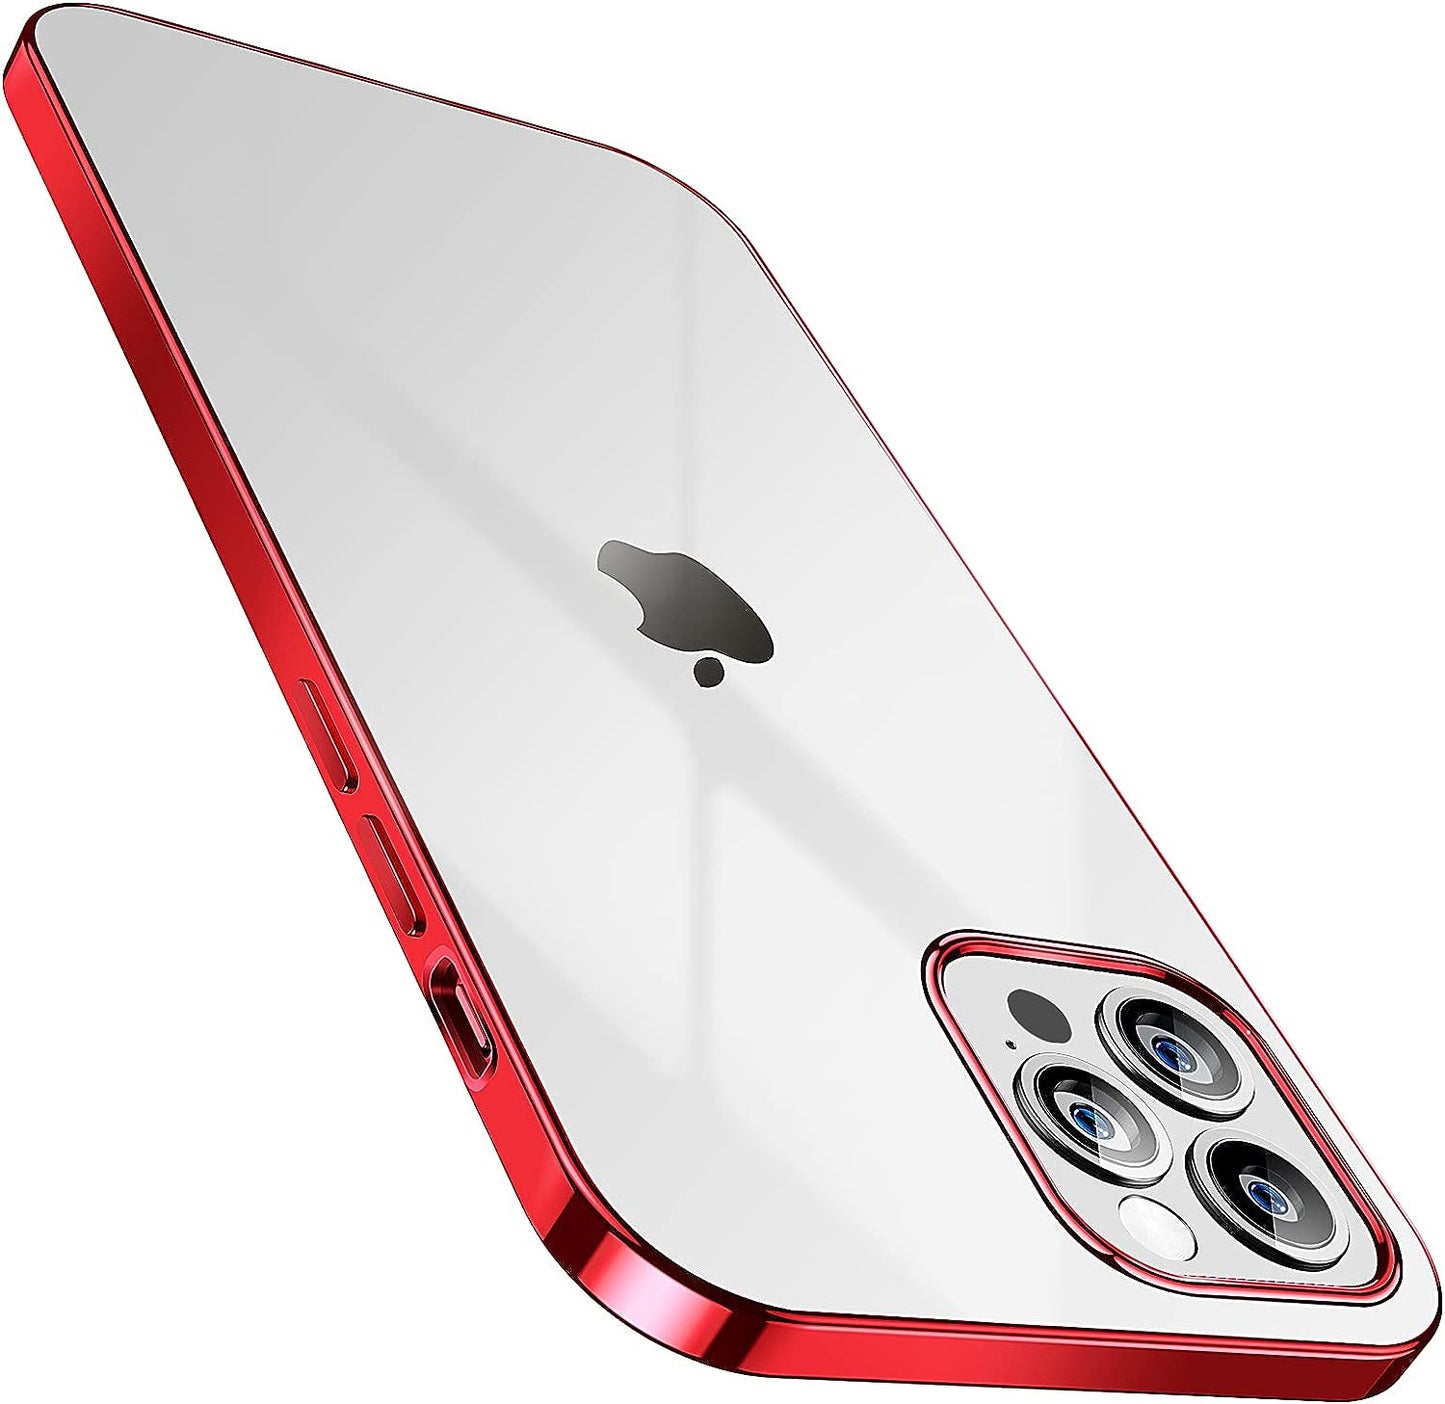 SMARTDEVIL Coque iPhone 12 Pro Max, Coque iPhone 12 Pro Max Transparente, AIR Cushion, Bumper Renforcé en TPU, Dos en PC, Protection Coin, Compatible con iPhone 12 Pro Max - Argent